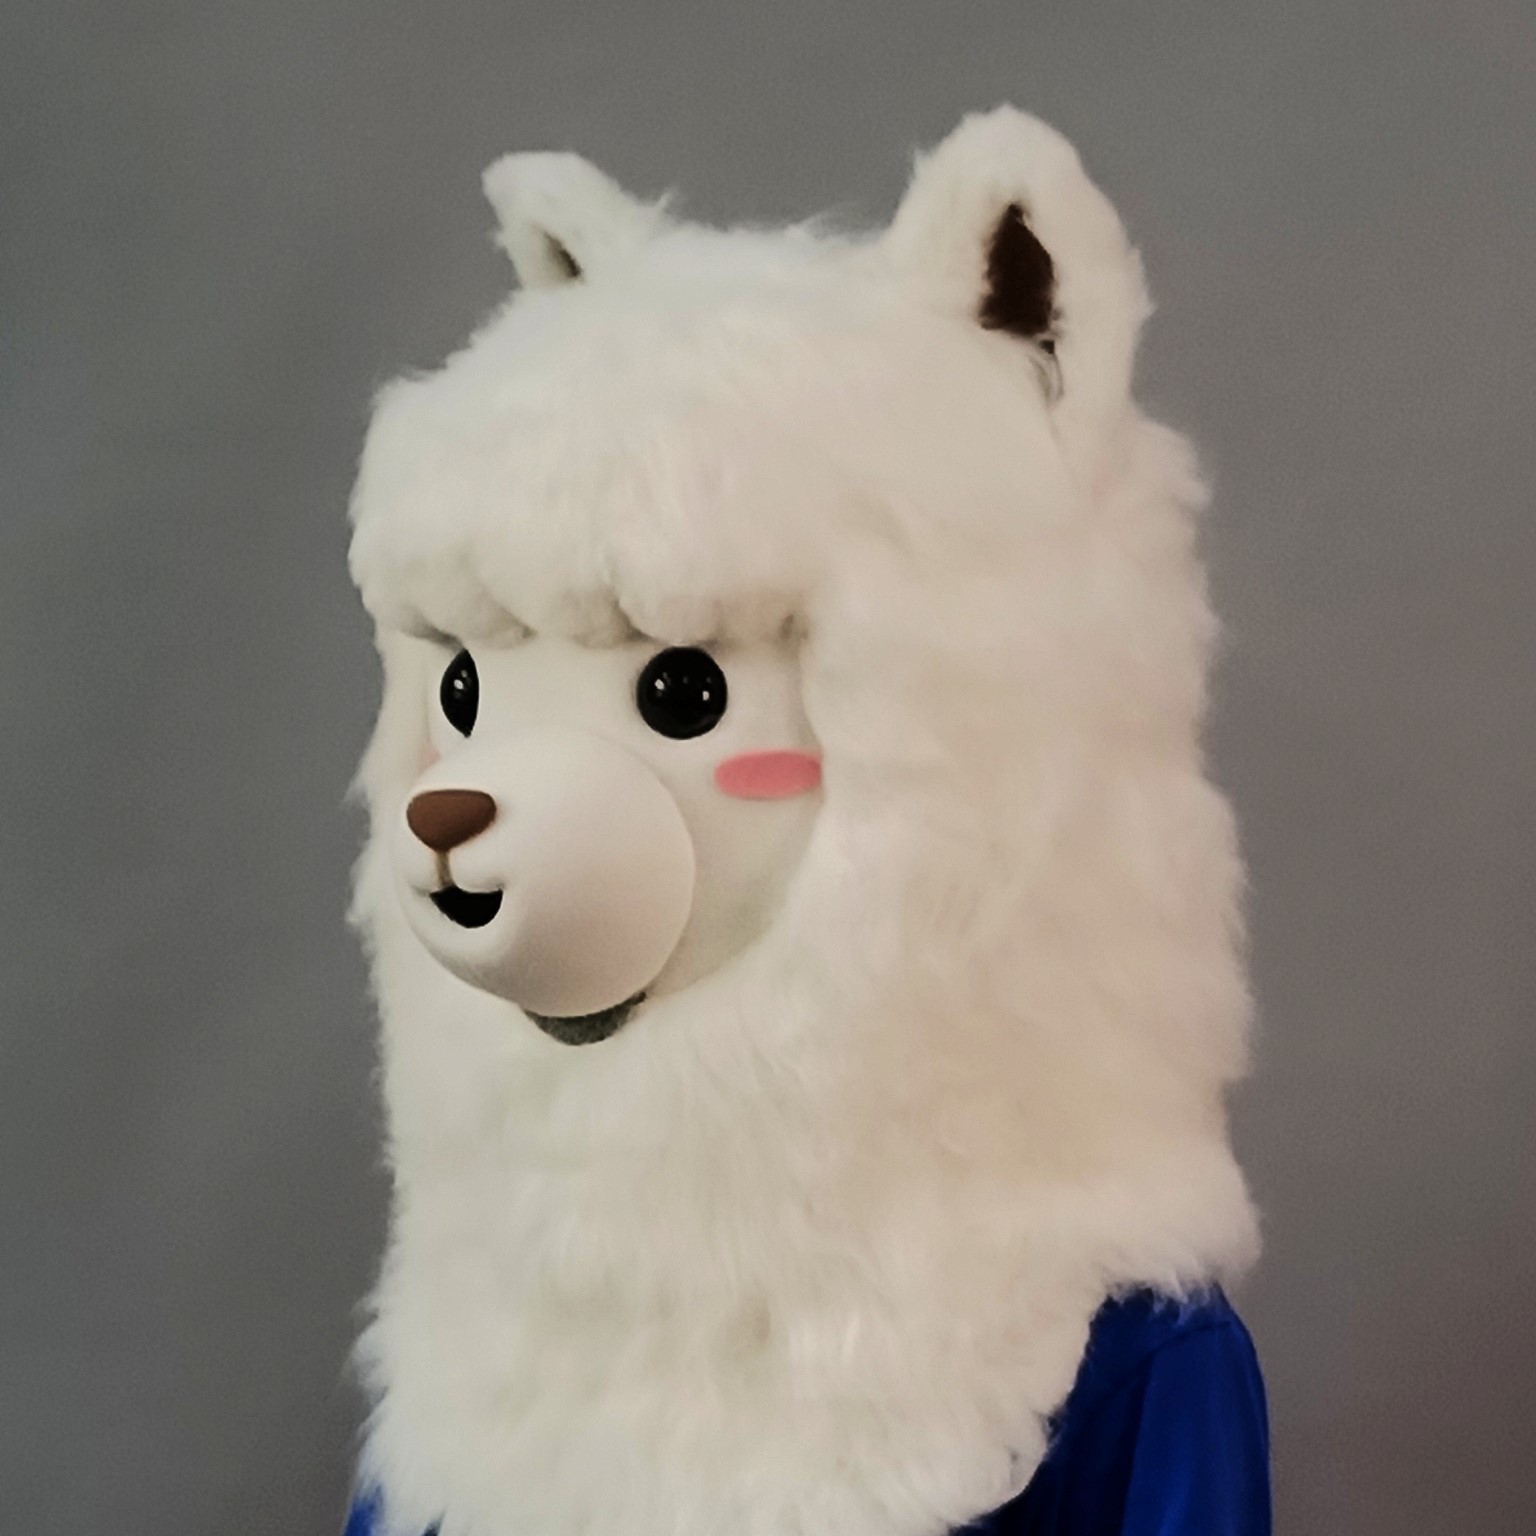 魔人社2021羊駝面具頭套製作 Alpaca mask